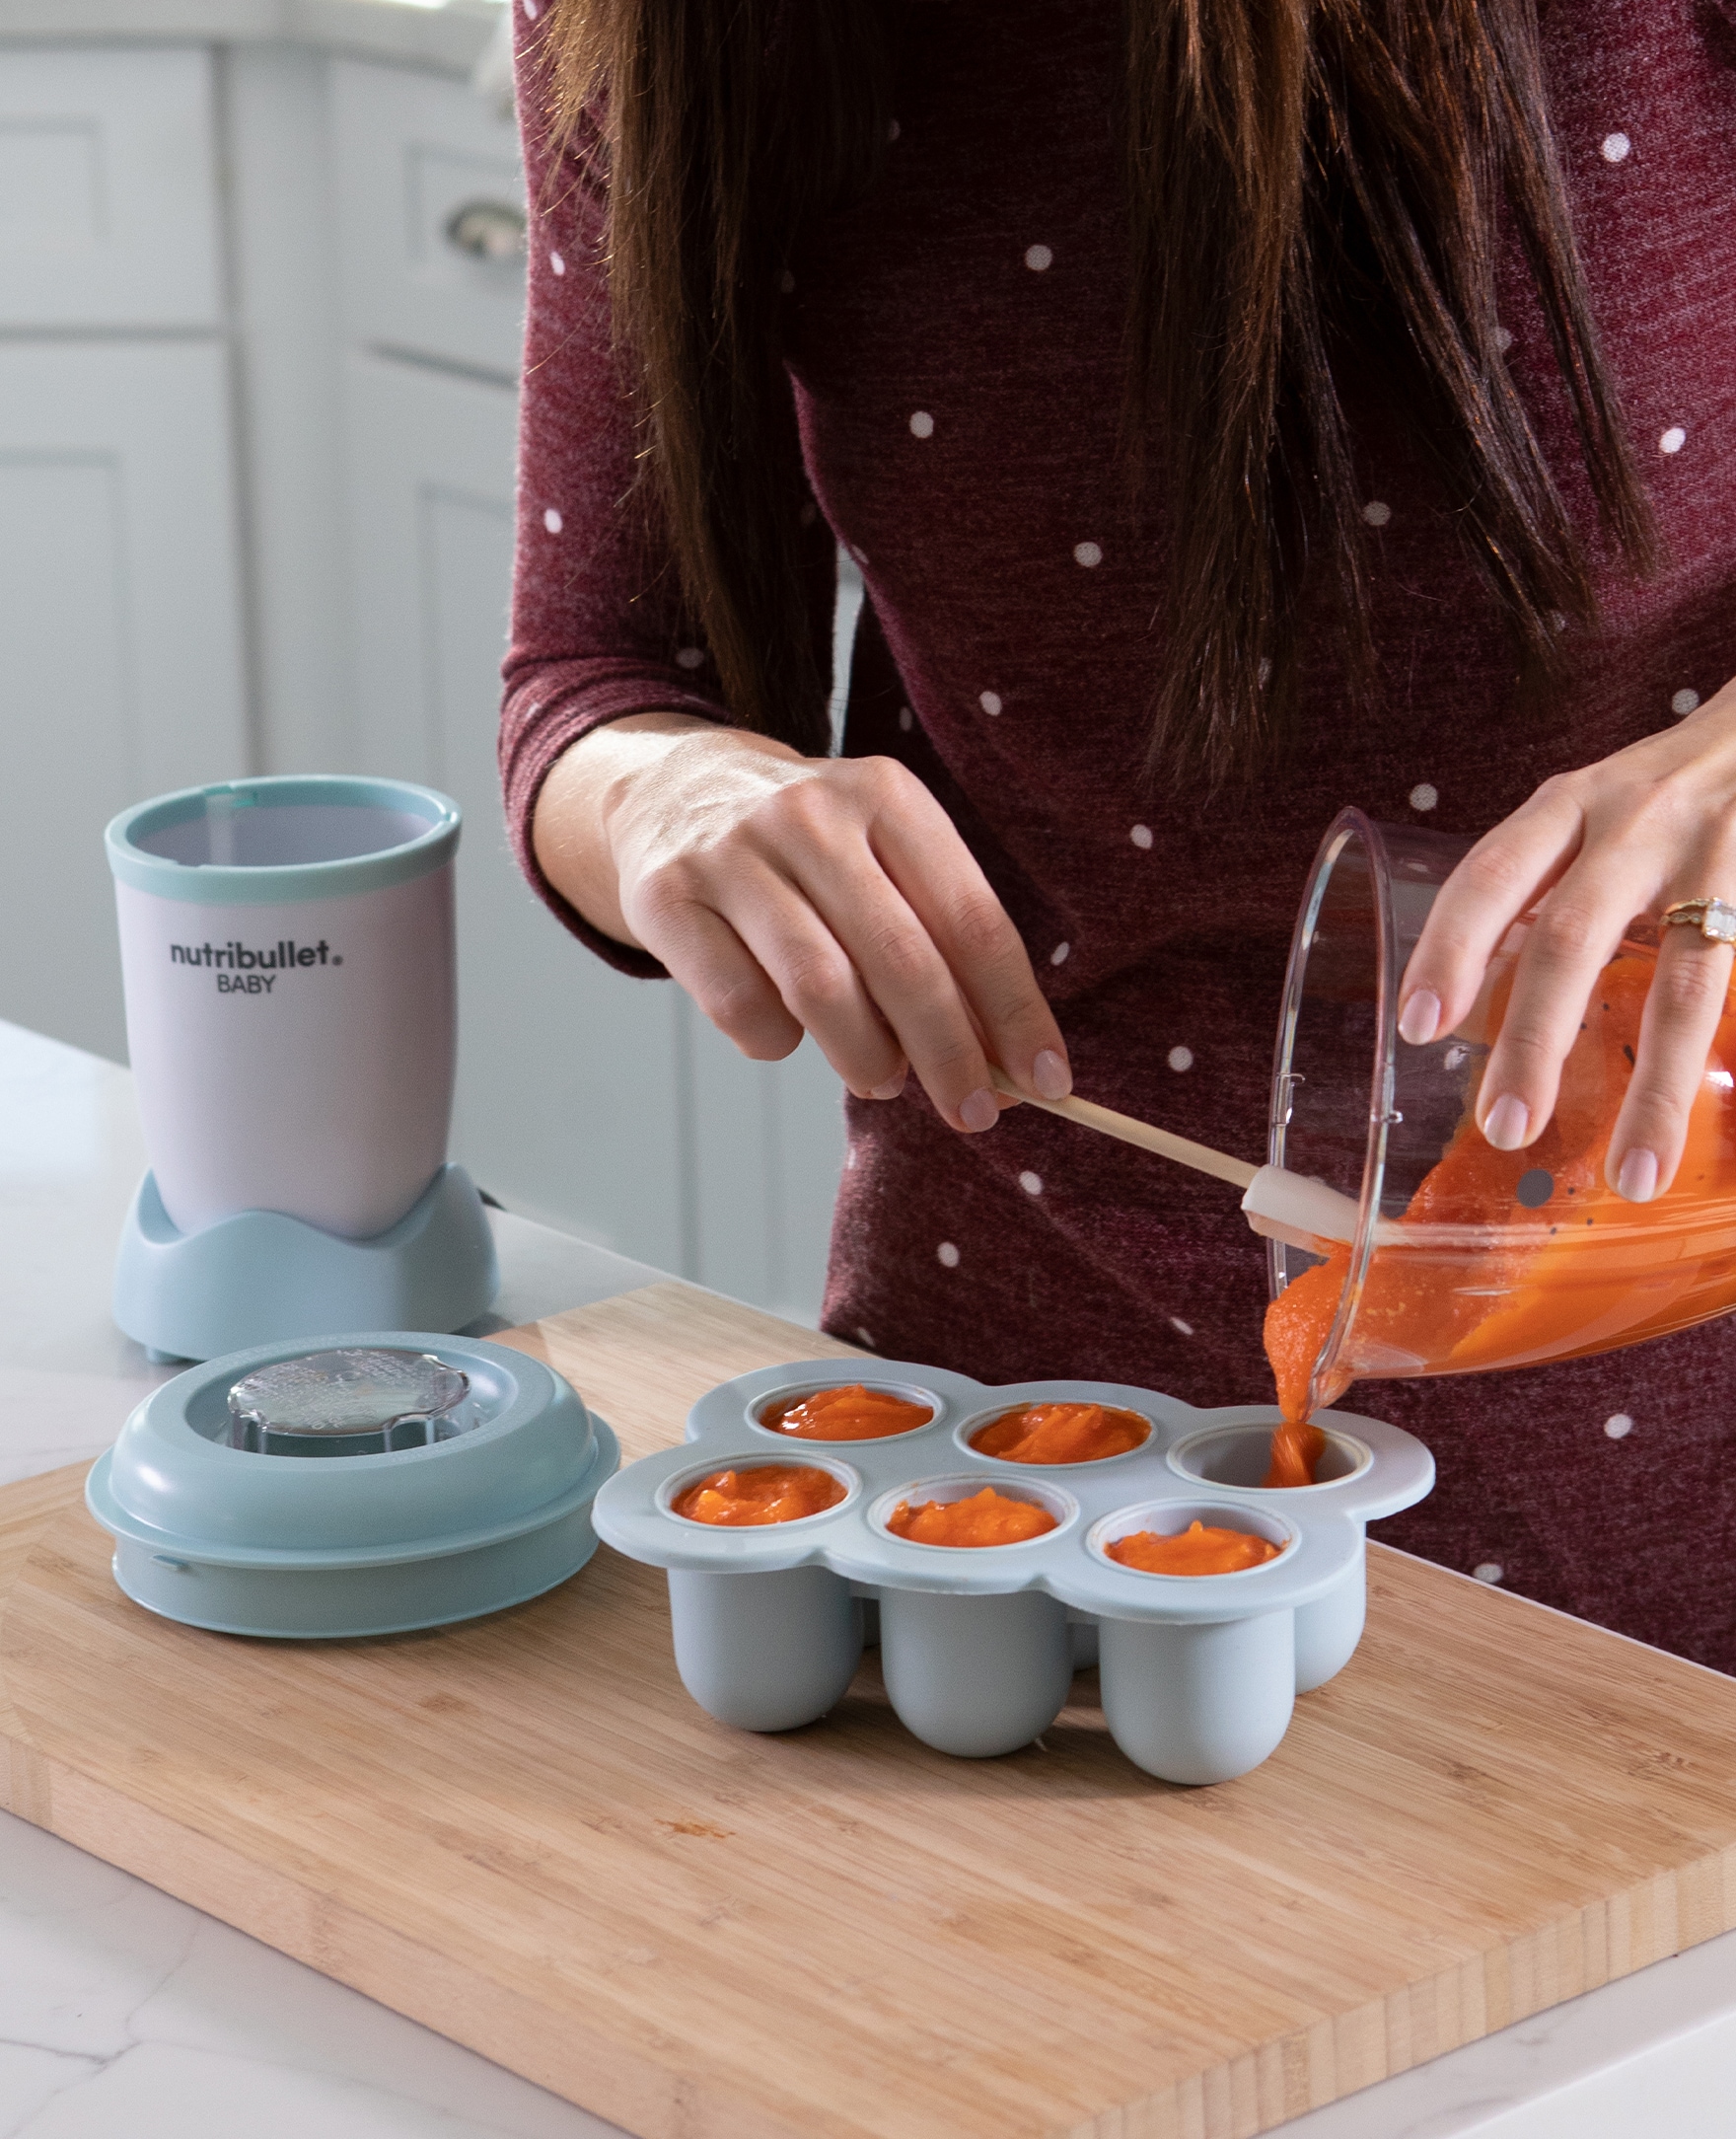 Nutribullet Baby 6-Piece Food Preparation System Blender, Recipe & Inst.  Guide